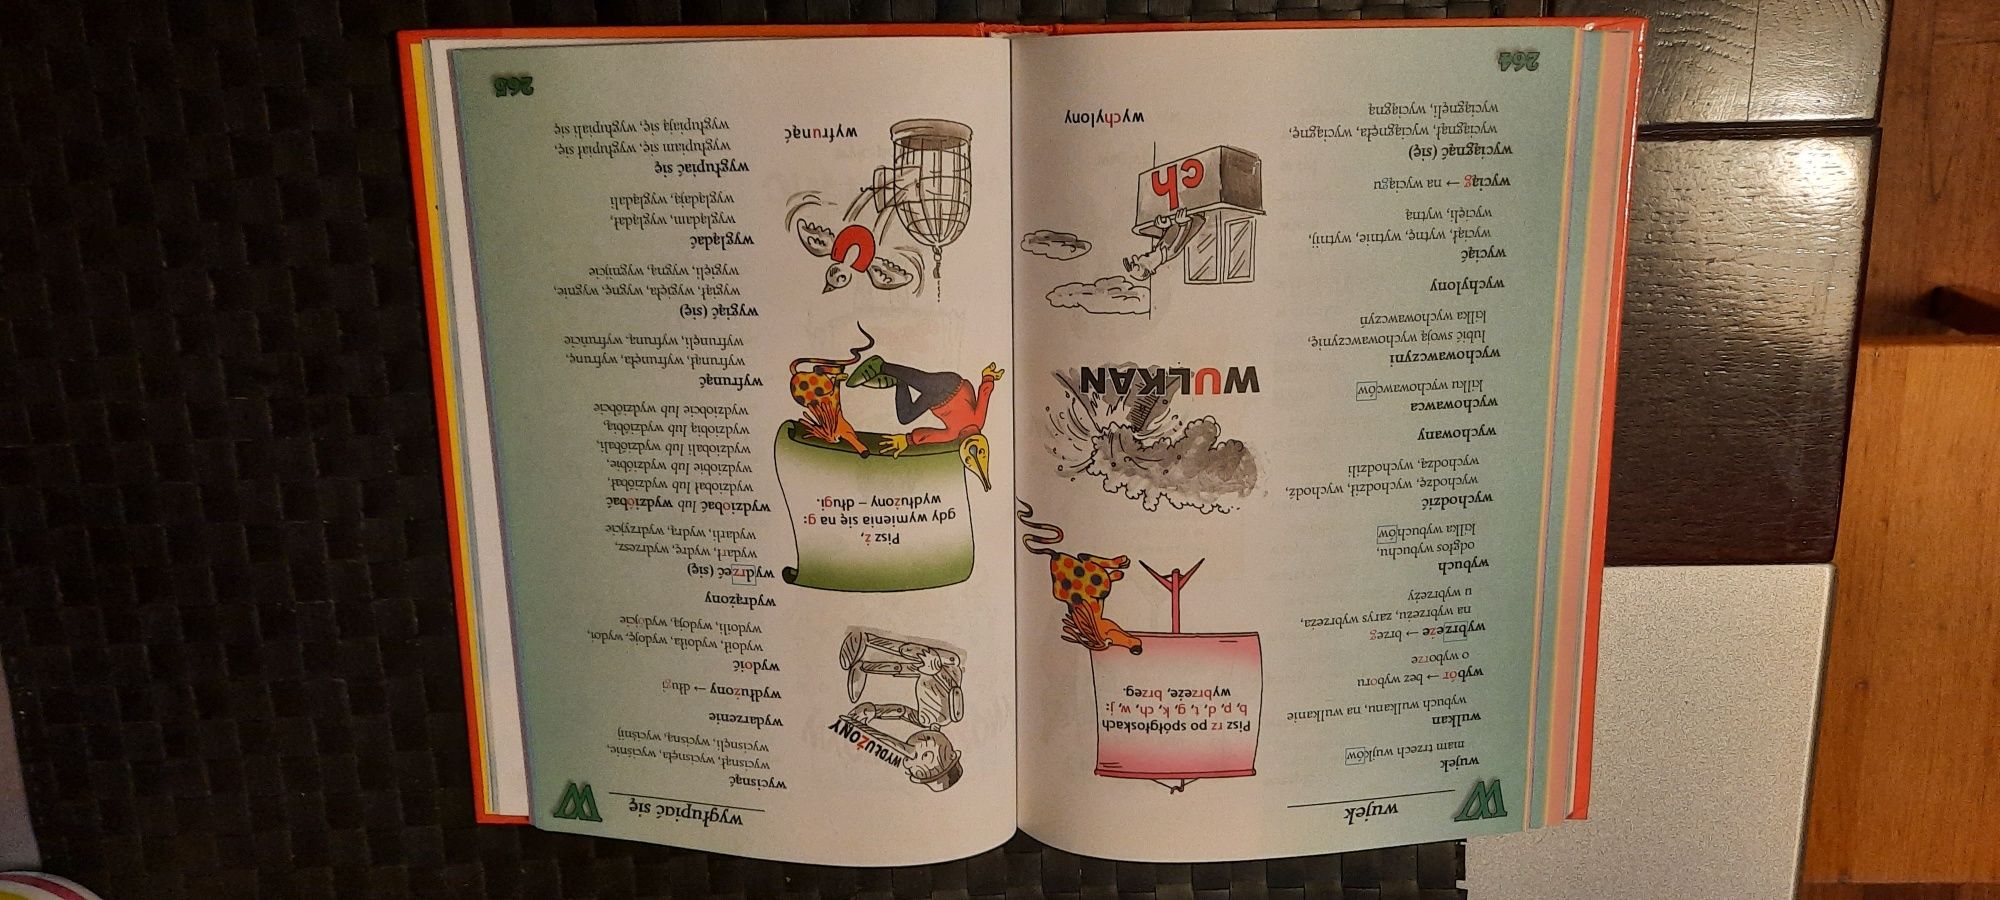 Wielki Ilustrowany Słownik Ortograficzny dla dzieci